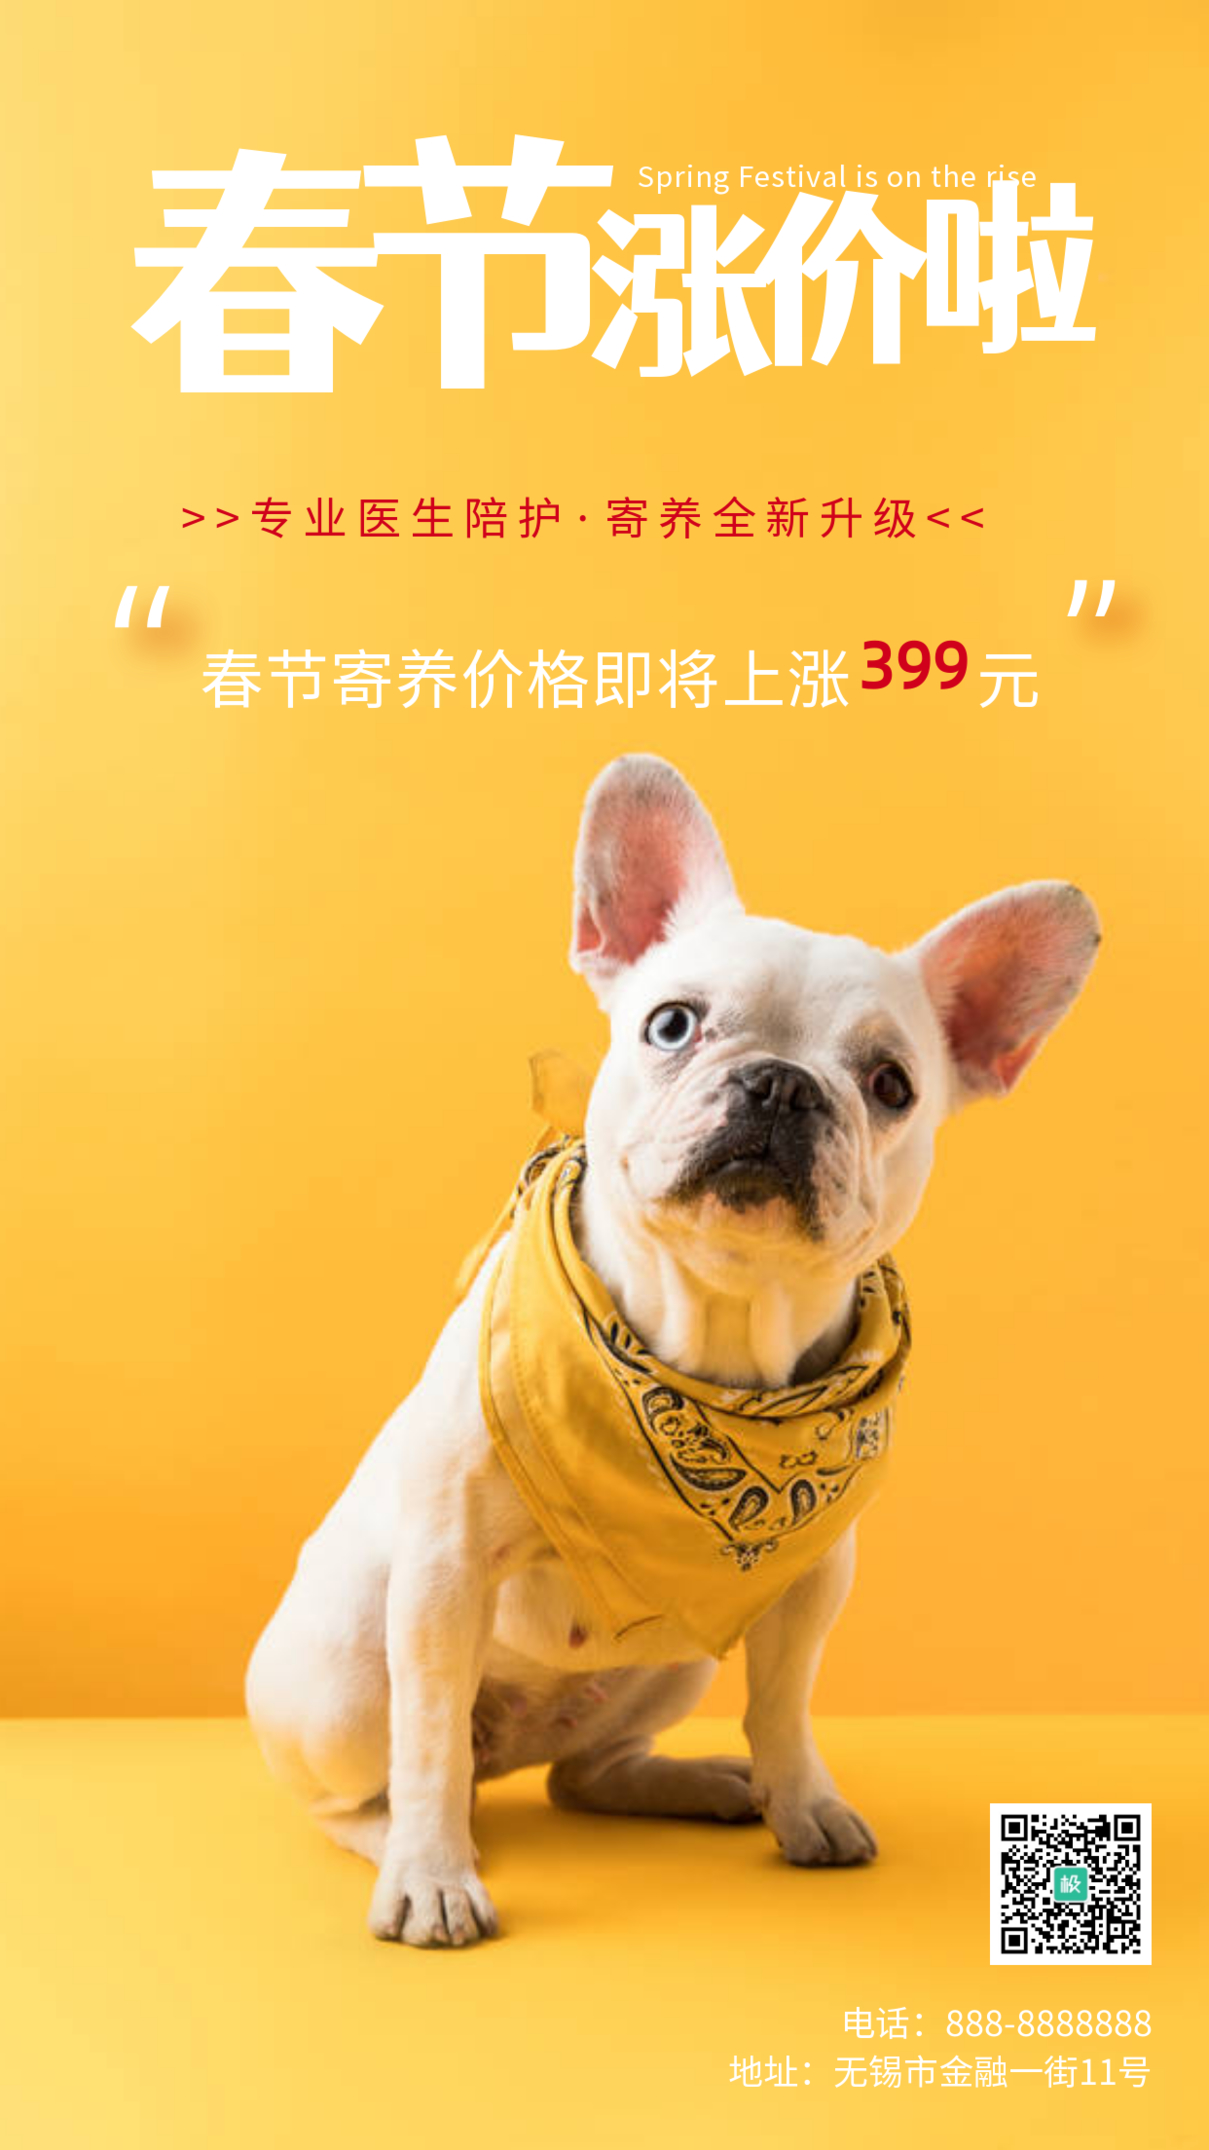 简约风格宠物店涨价通知宣传手机海报